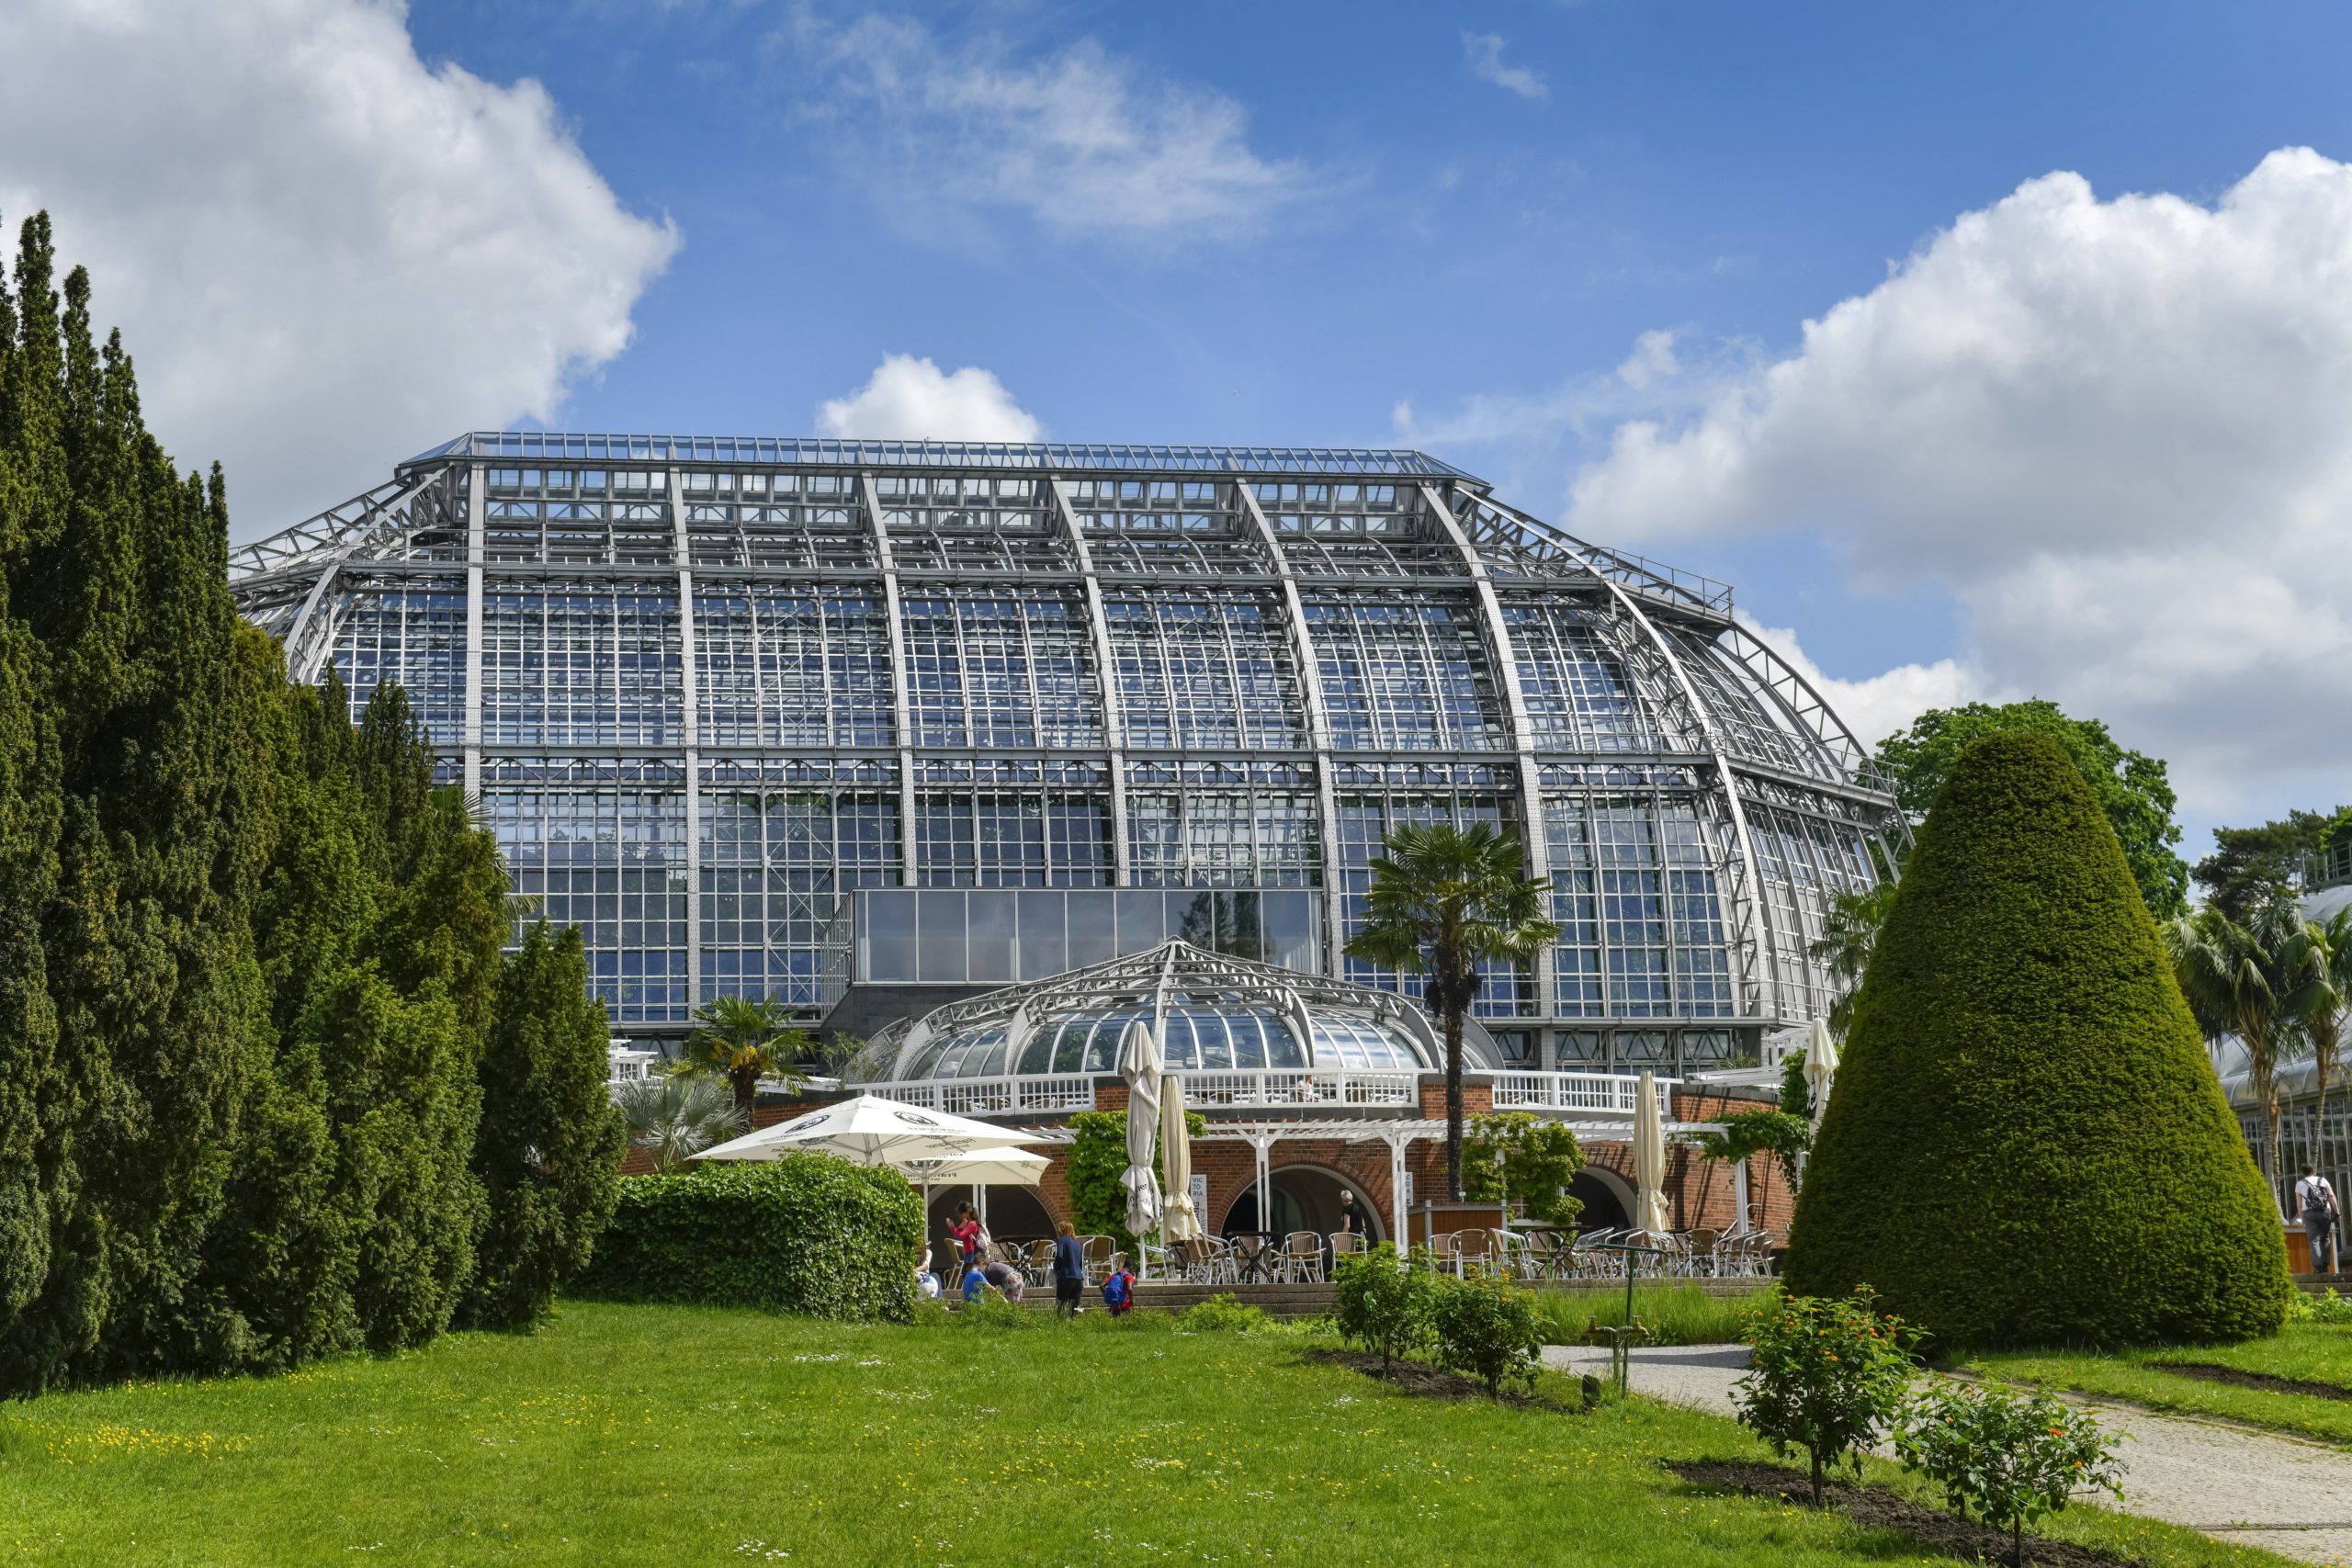 Zehlendorf Tipps Das große Tropenhaus im Botanischen Garten Berlin ist eines der größten Gewächshäuser weltweit.